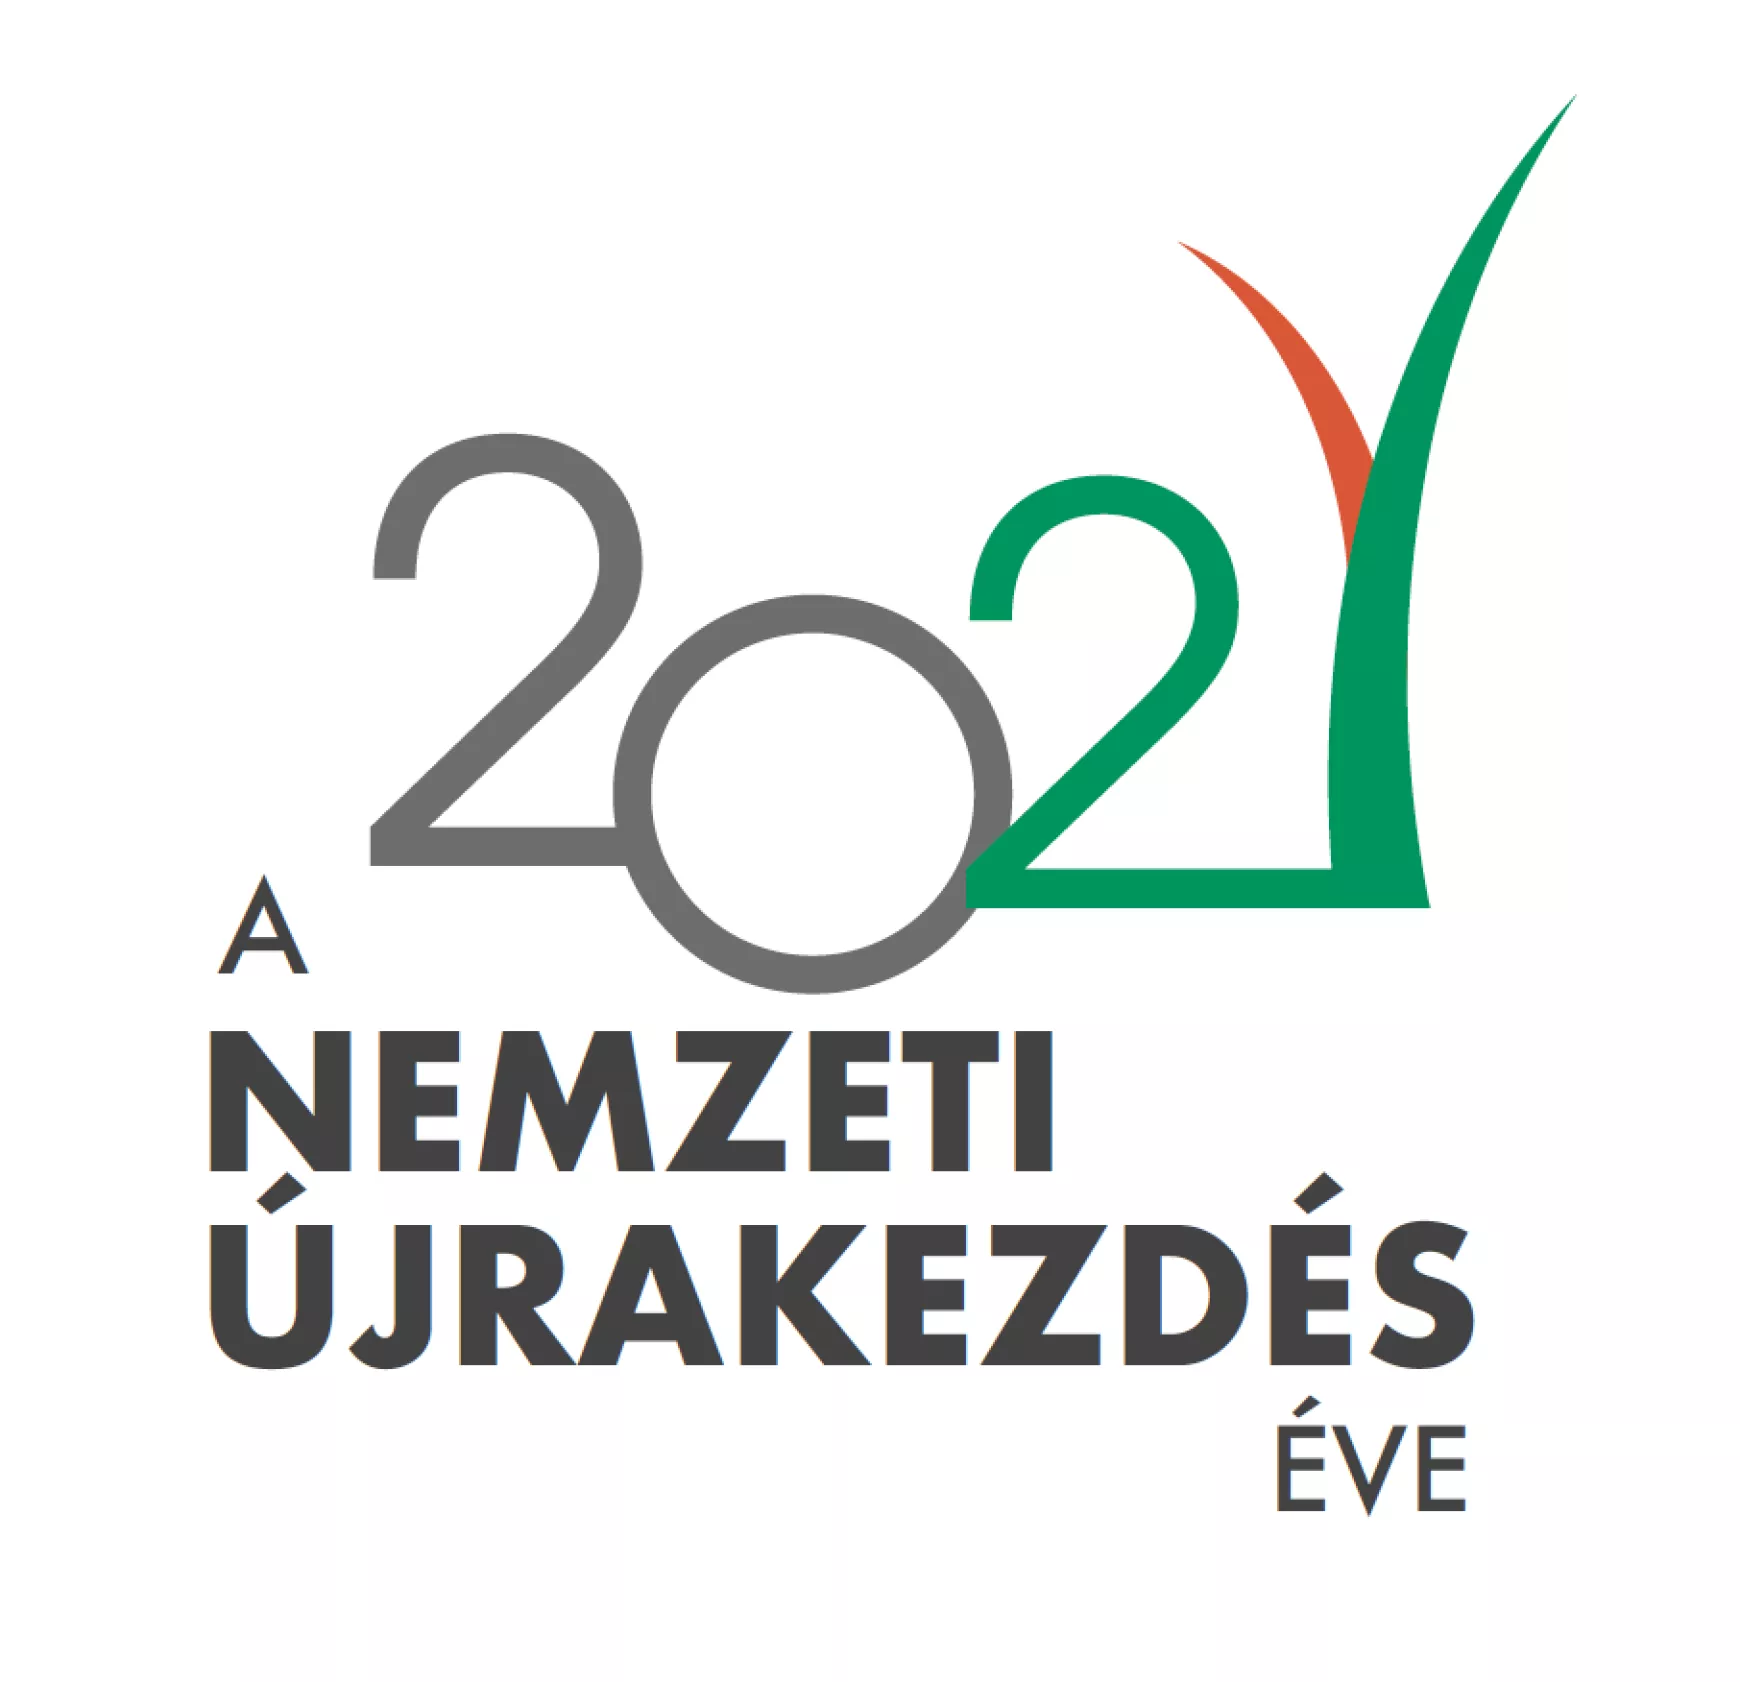 2021 a nemzeti újrakezdés éve